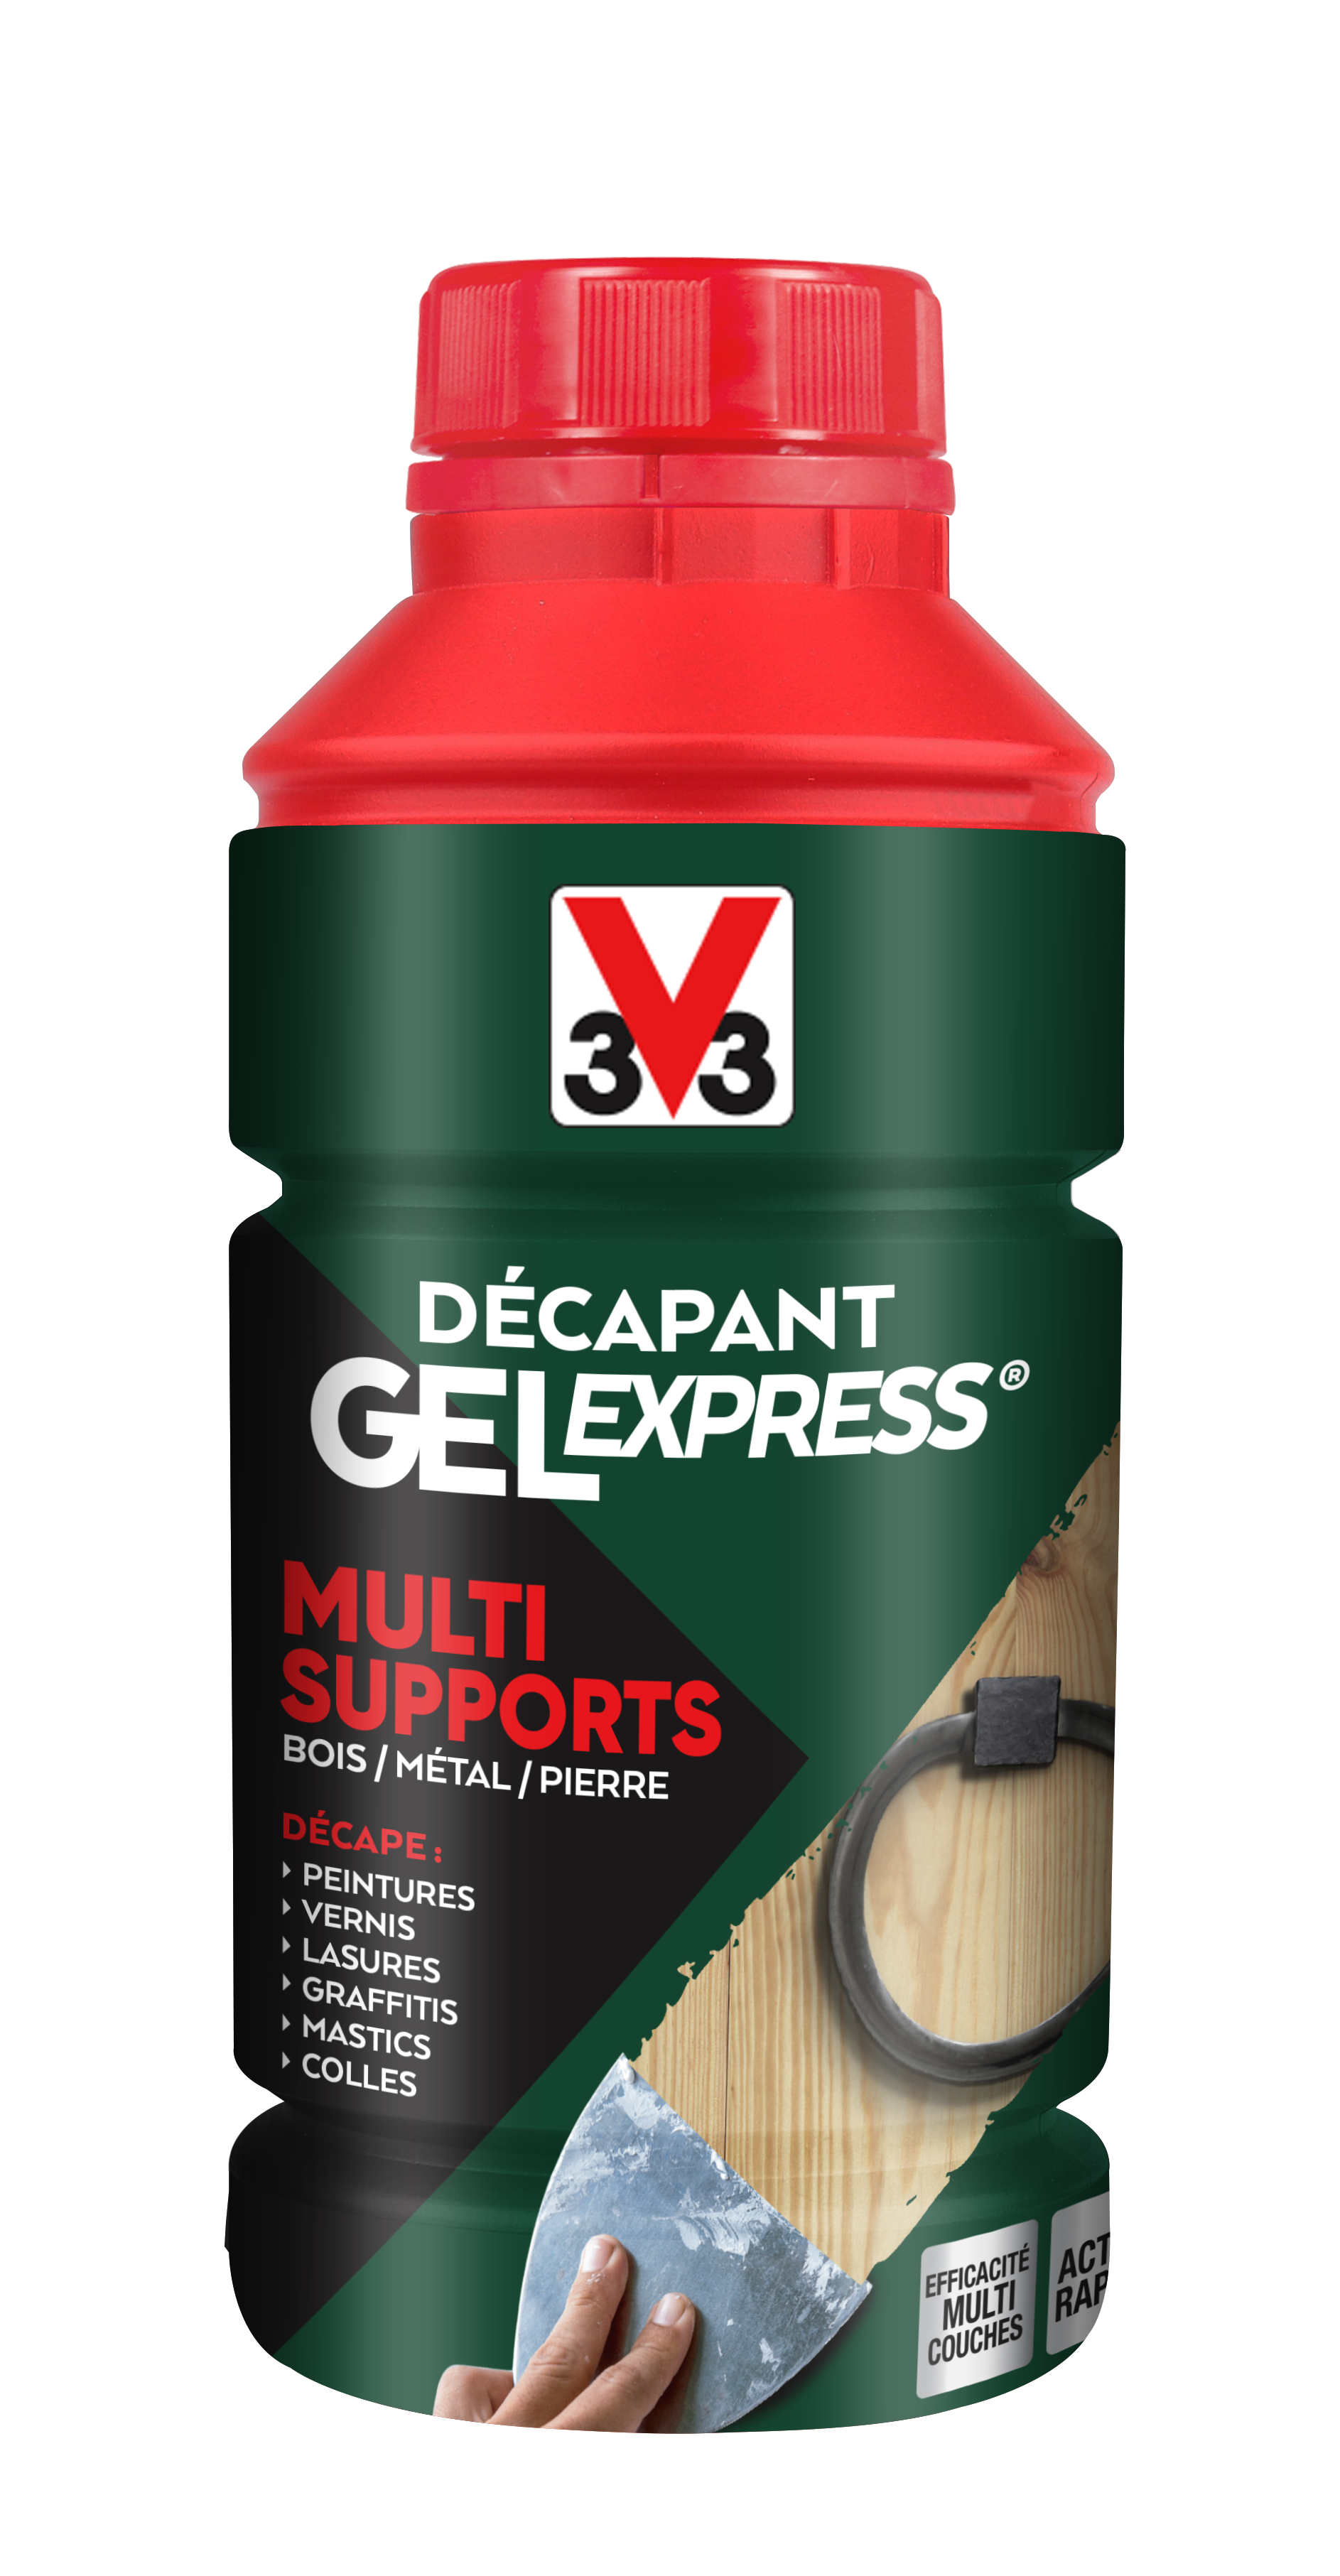 Décapant gel express multisupport 0.5l - V33